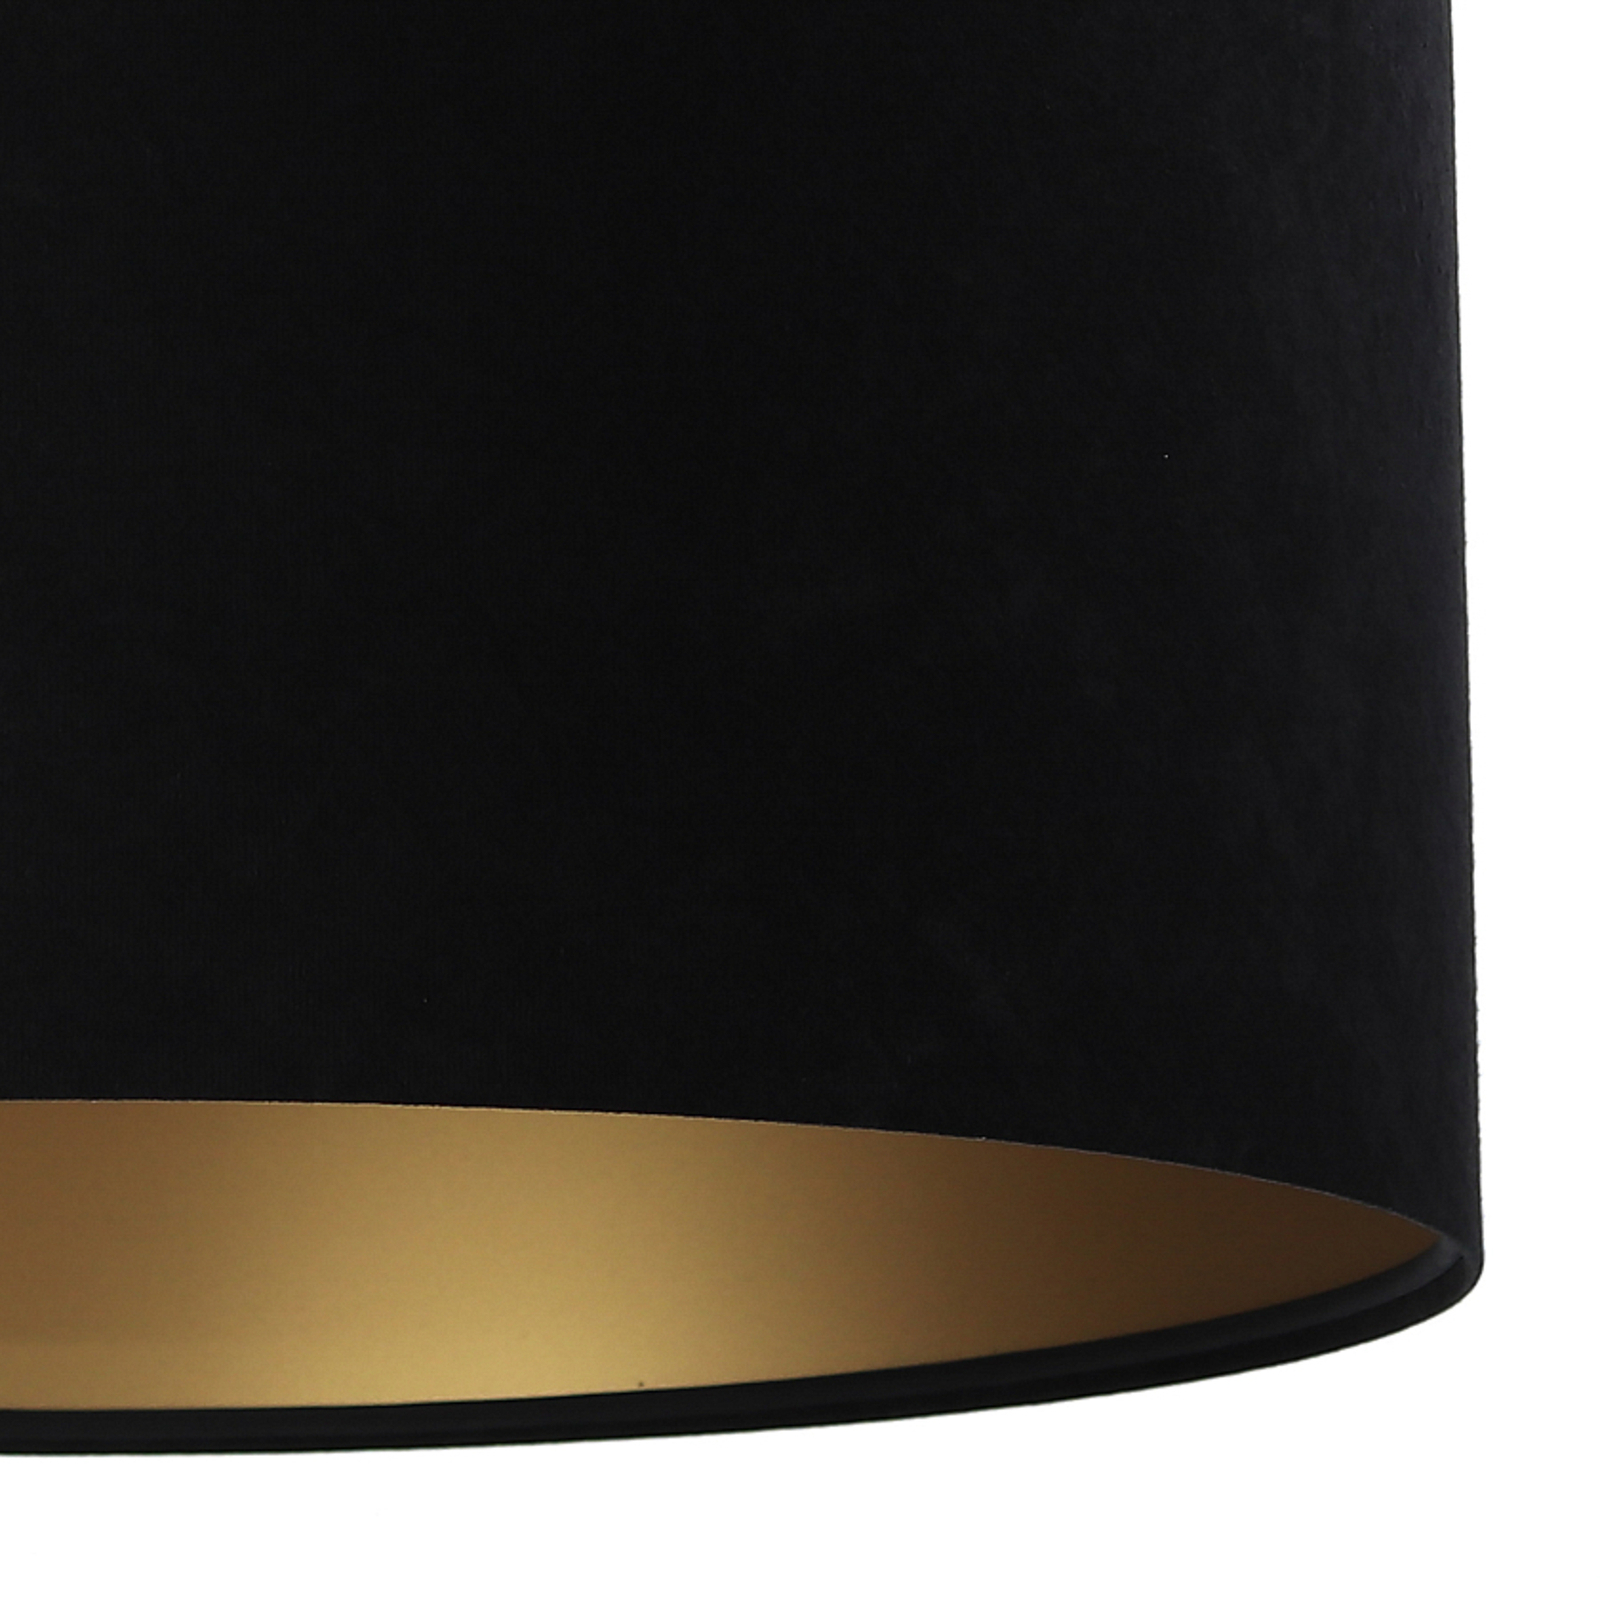 Závěsné svítidlo Salina, černá/zlatá, Ø 40 cm